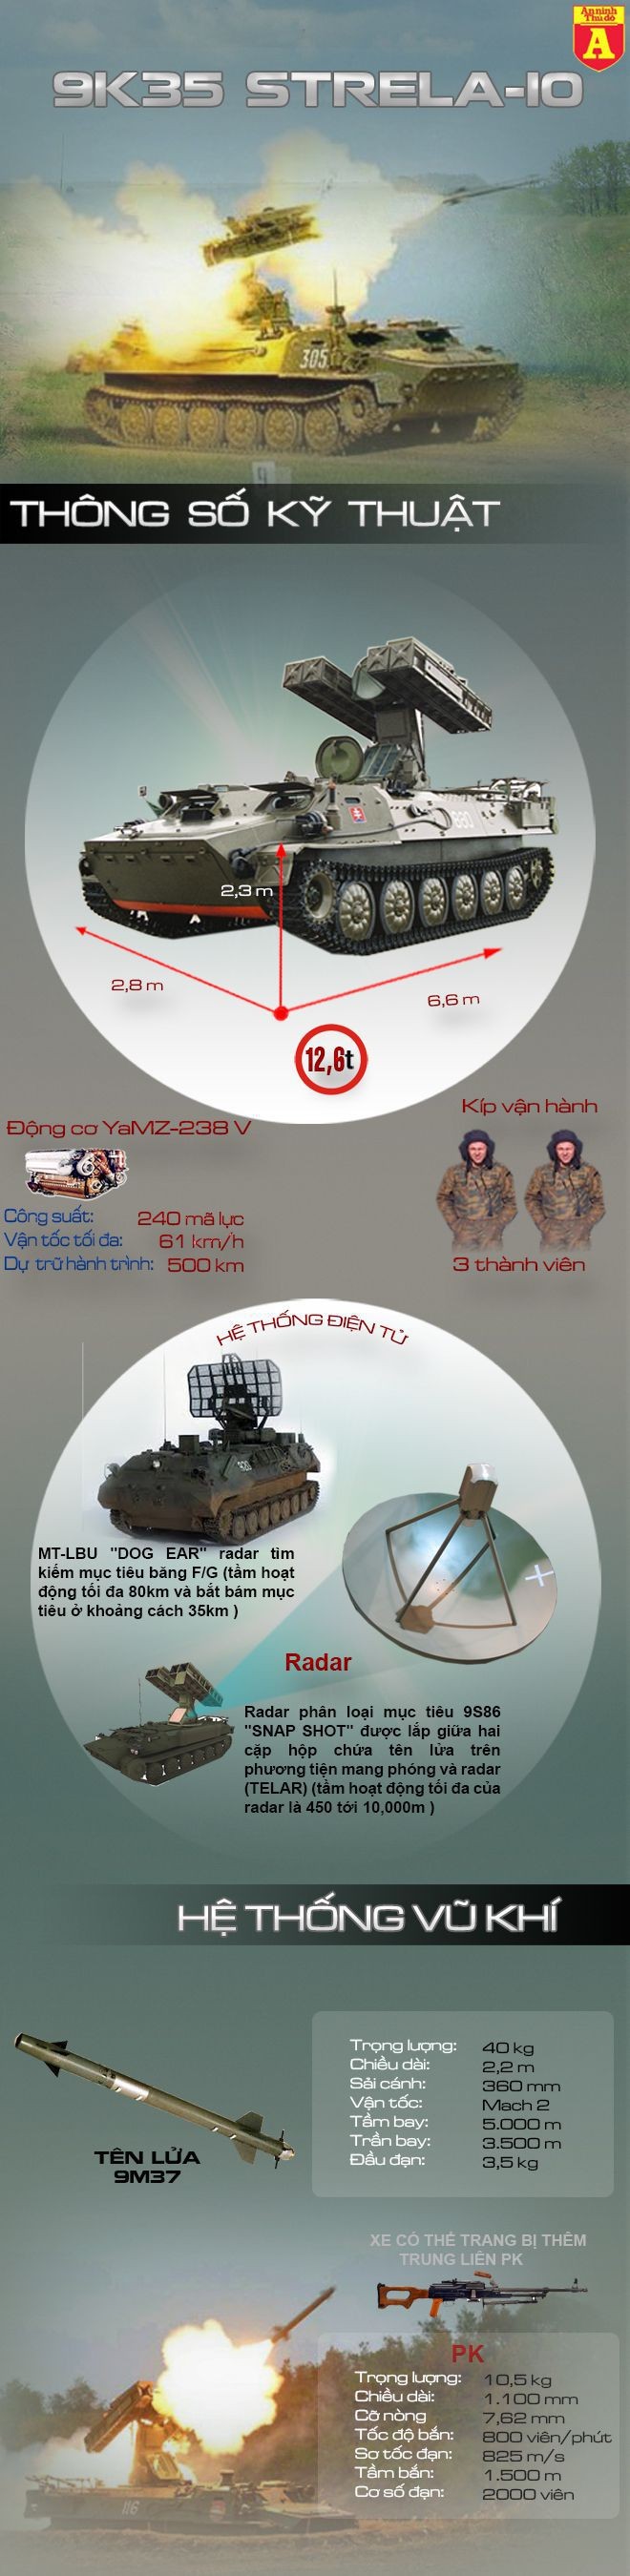 [Infographic] Sát thủ phòng không tầm thấp của Việt Nam ảnh 1